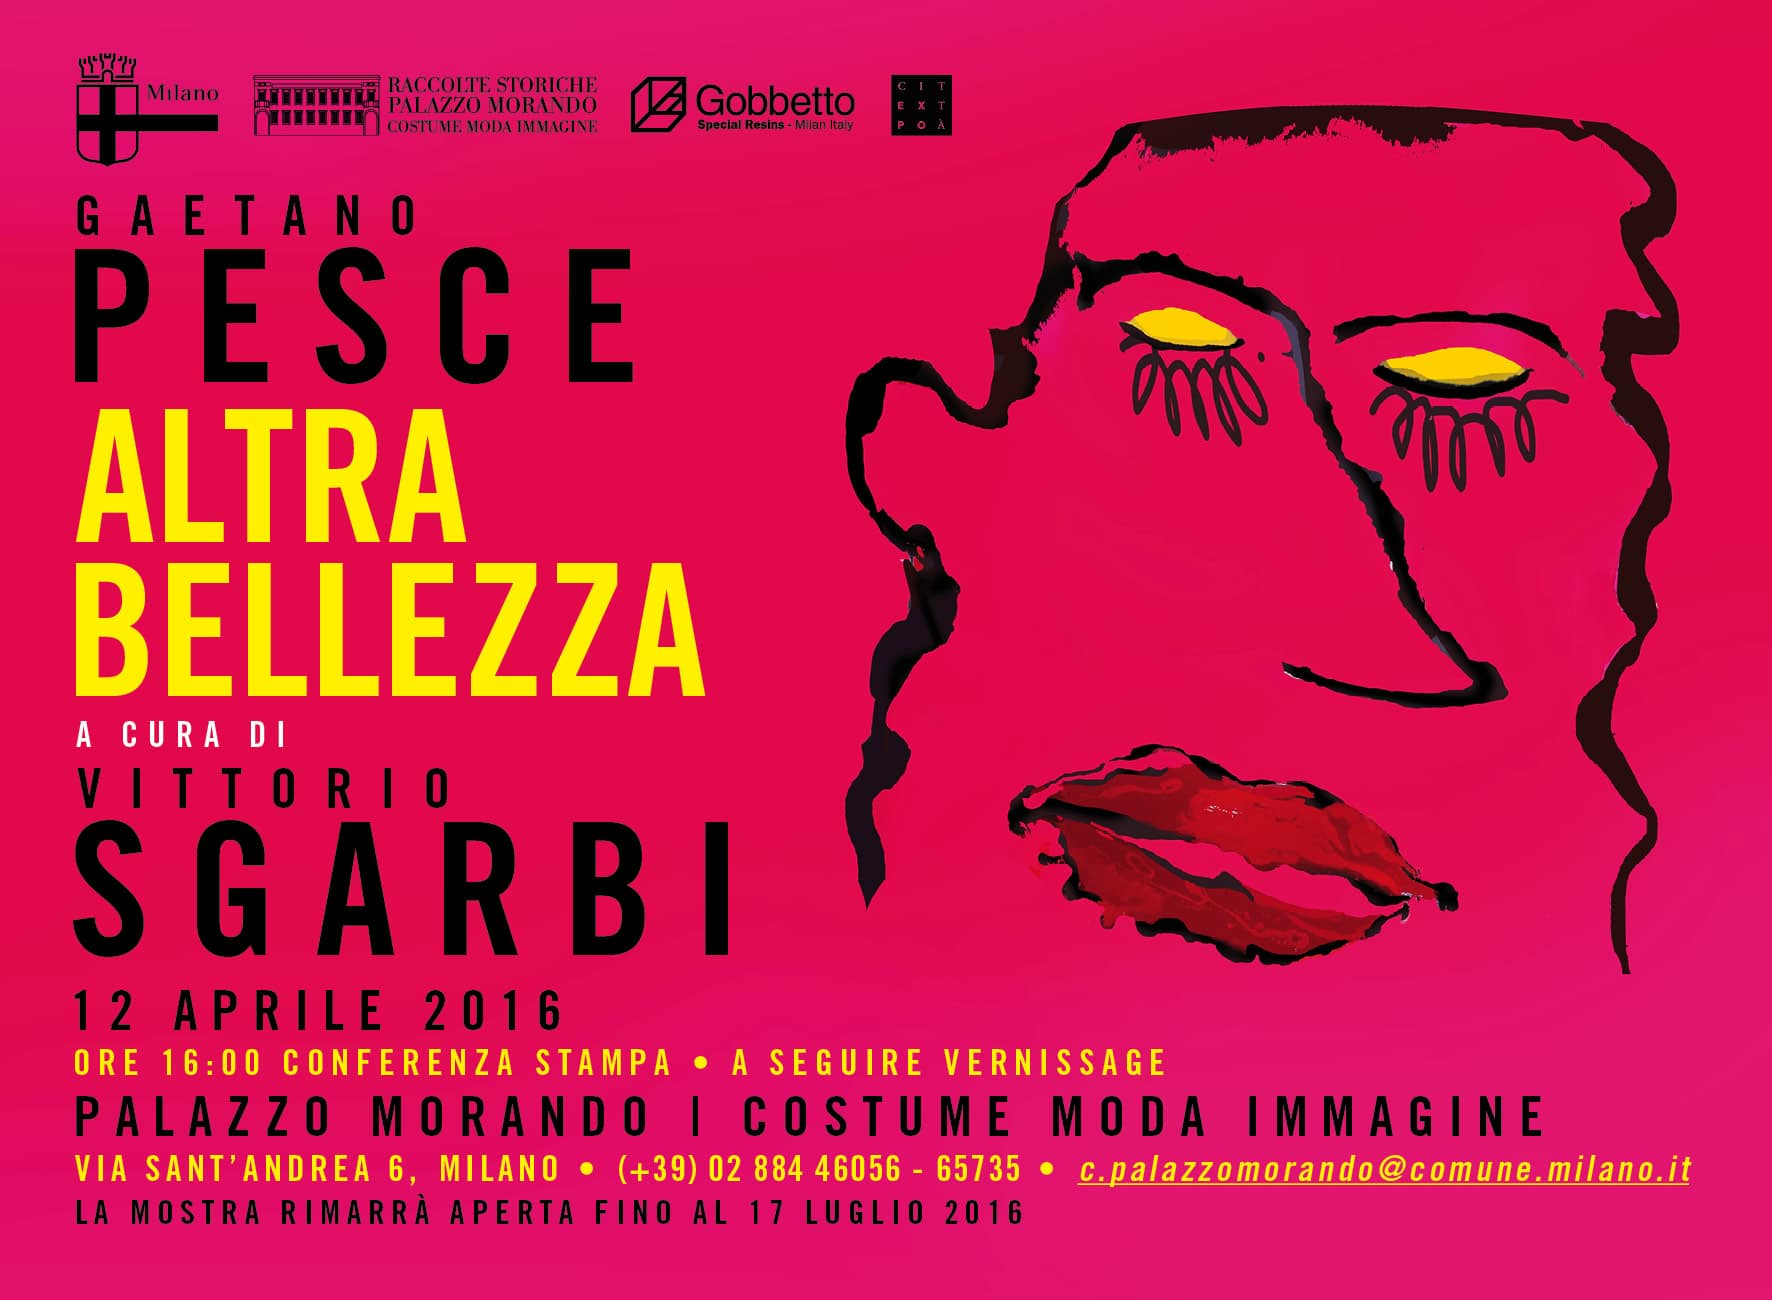 Gaetano Pesce: Altra bellezza a cura di Vittorio Sgarbi